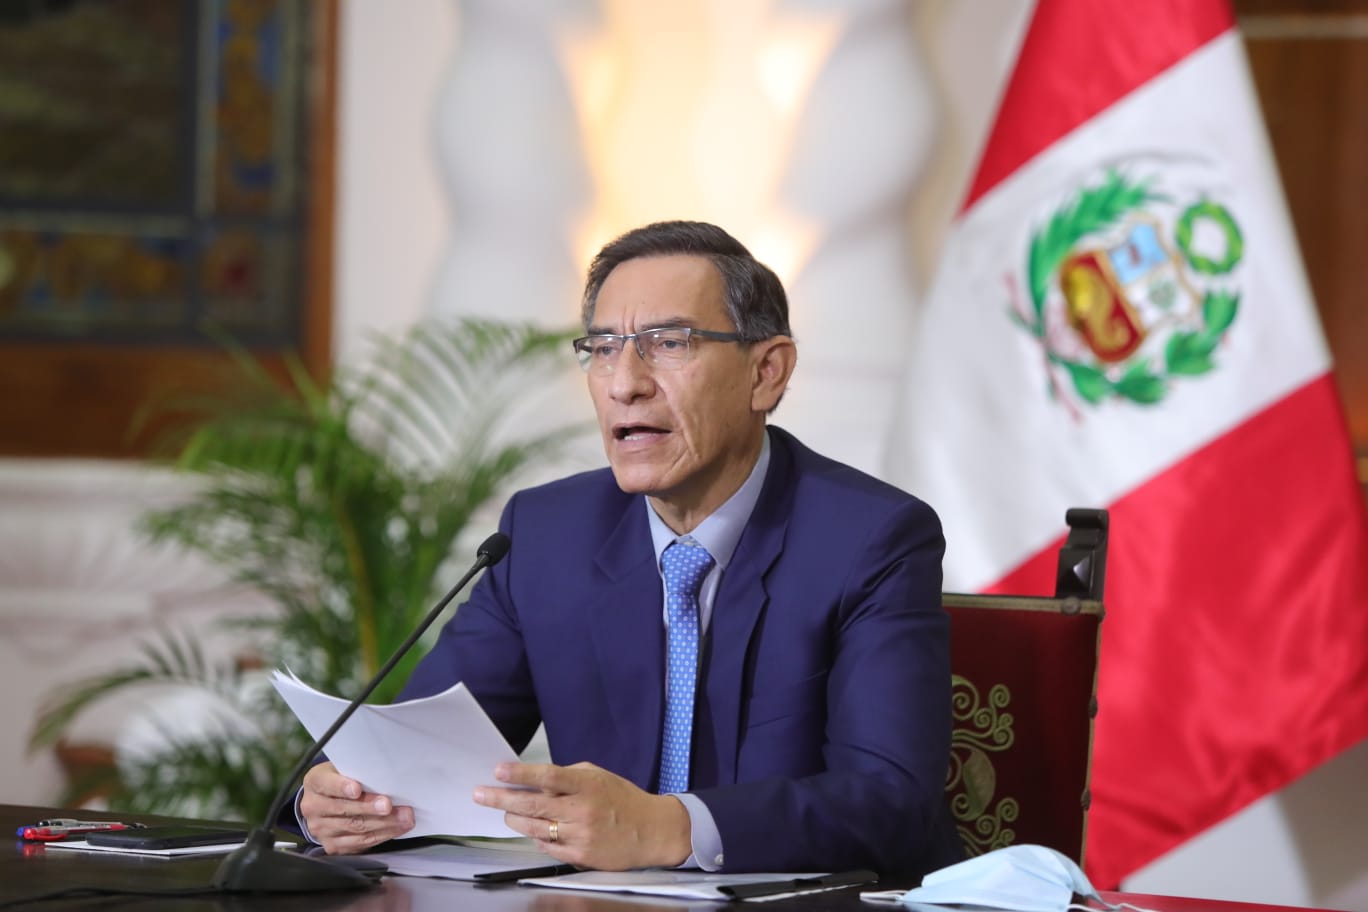 Portada: Martín Vizcarra convoca a elecciones generales para el 11 de abril del 2021